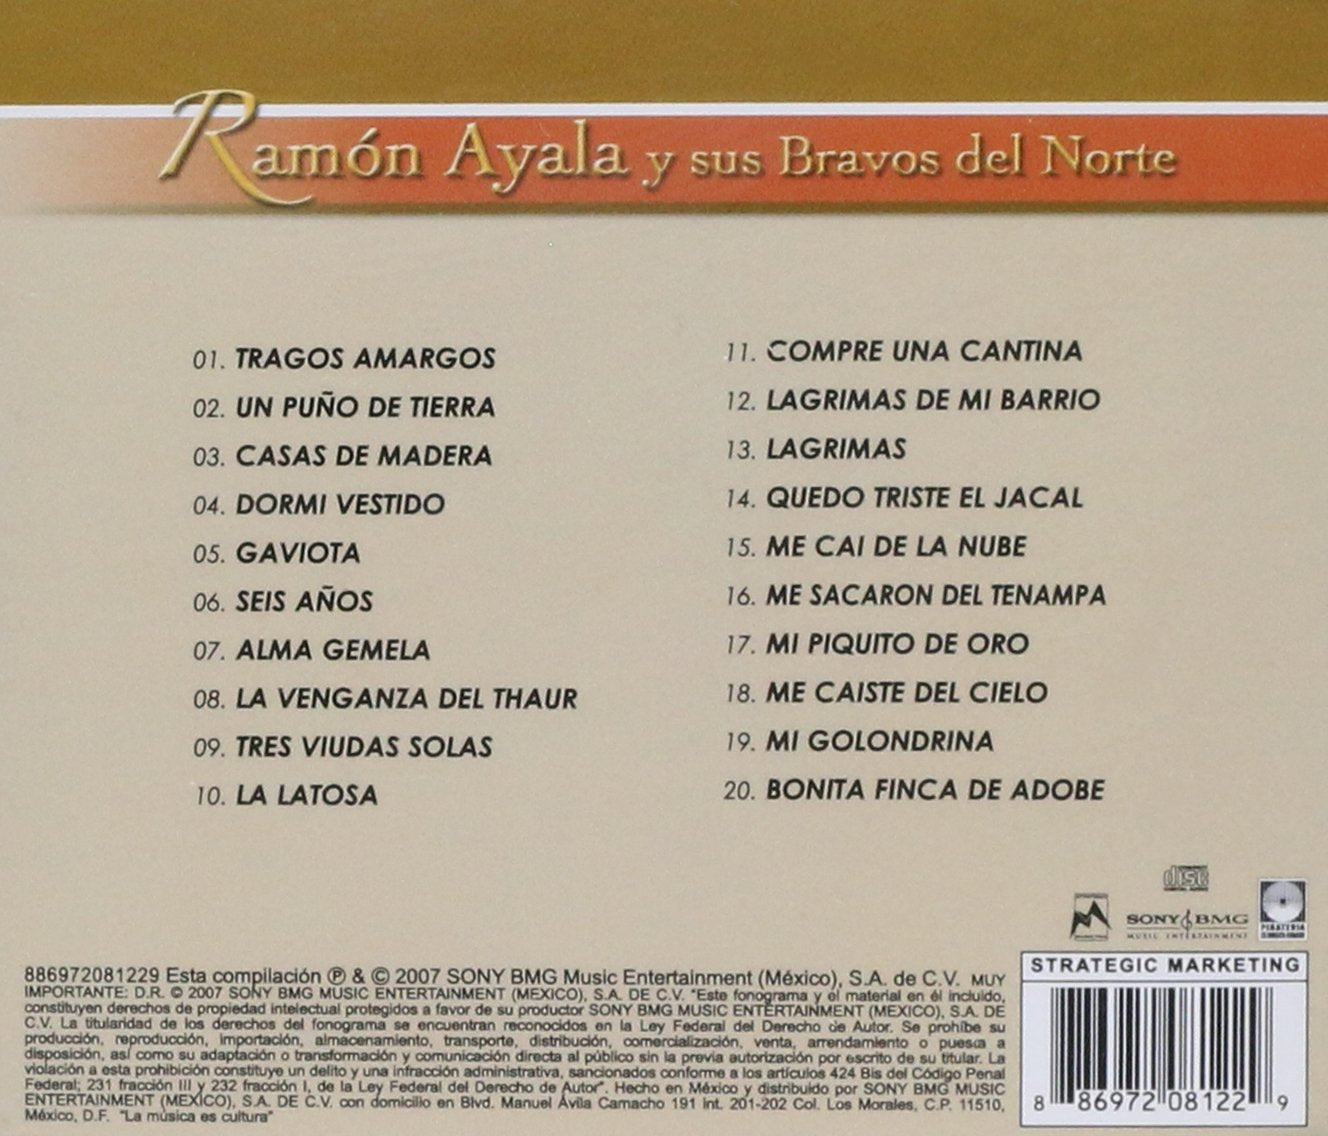 Ramon Ayala y sus Bravos del Norte - Brillantes Versiones Originales (CD)